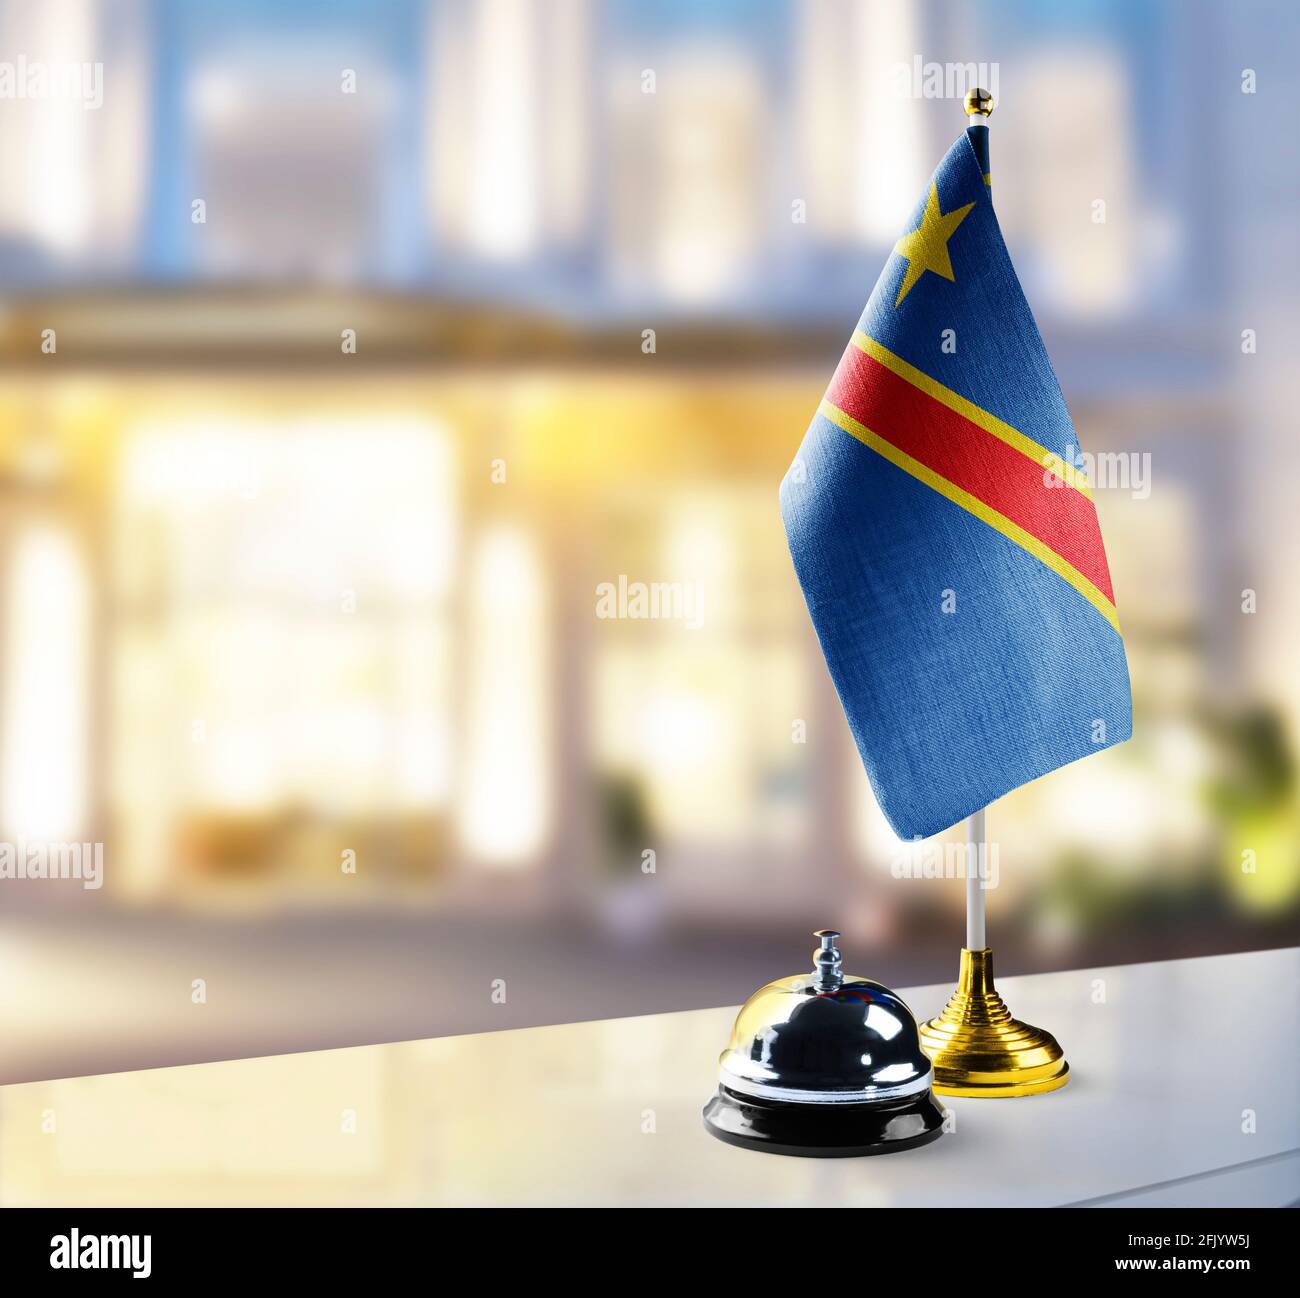 Flagge der Demokratischen Republik Kongo auf der Rezeption In der Lobby des Hotels Stockfoto